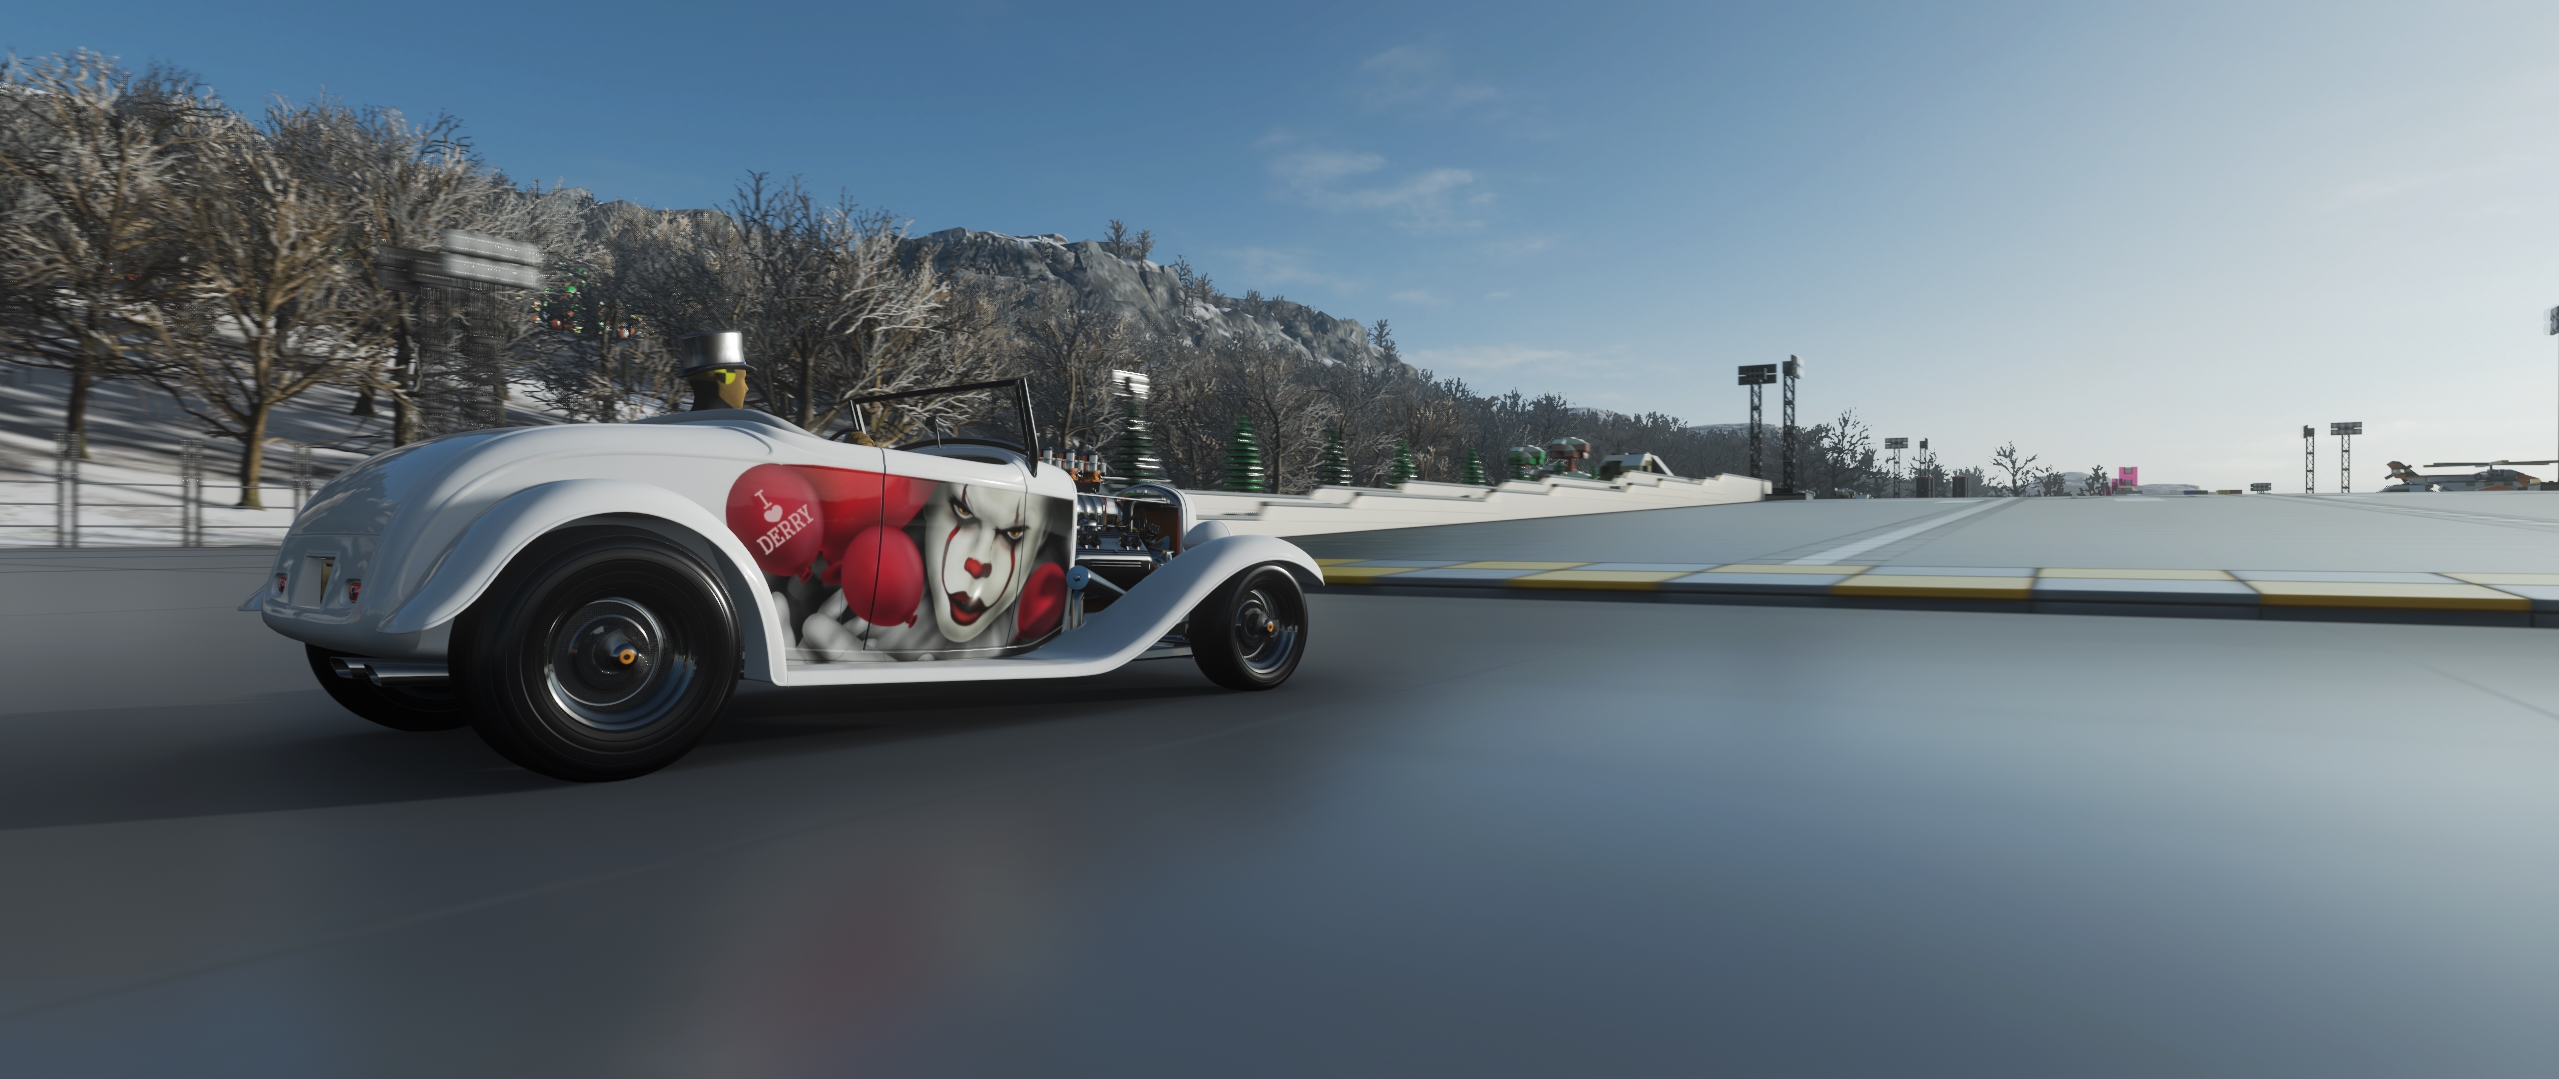 General 2559x1079 Forza Horizon 4 car vehicle screen shot racing video games